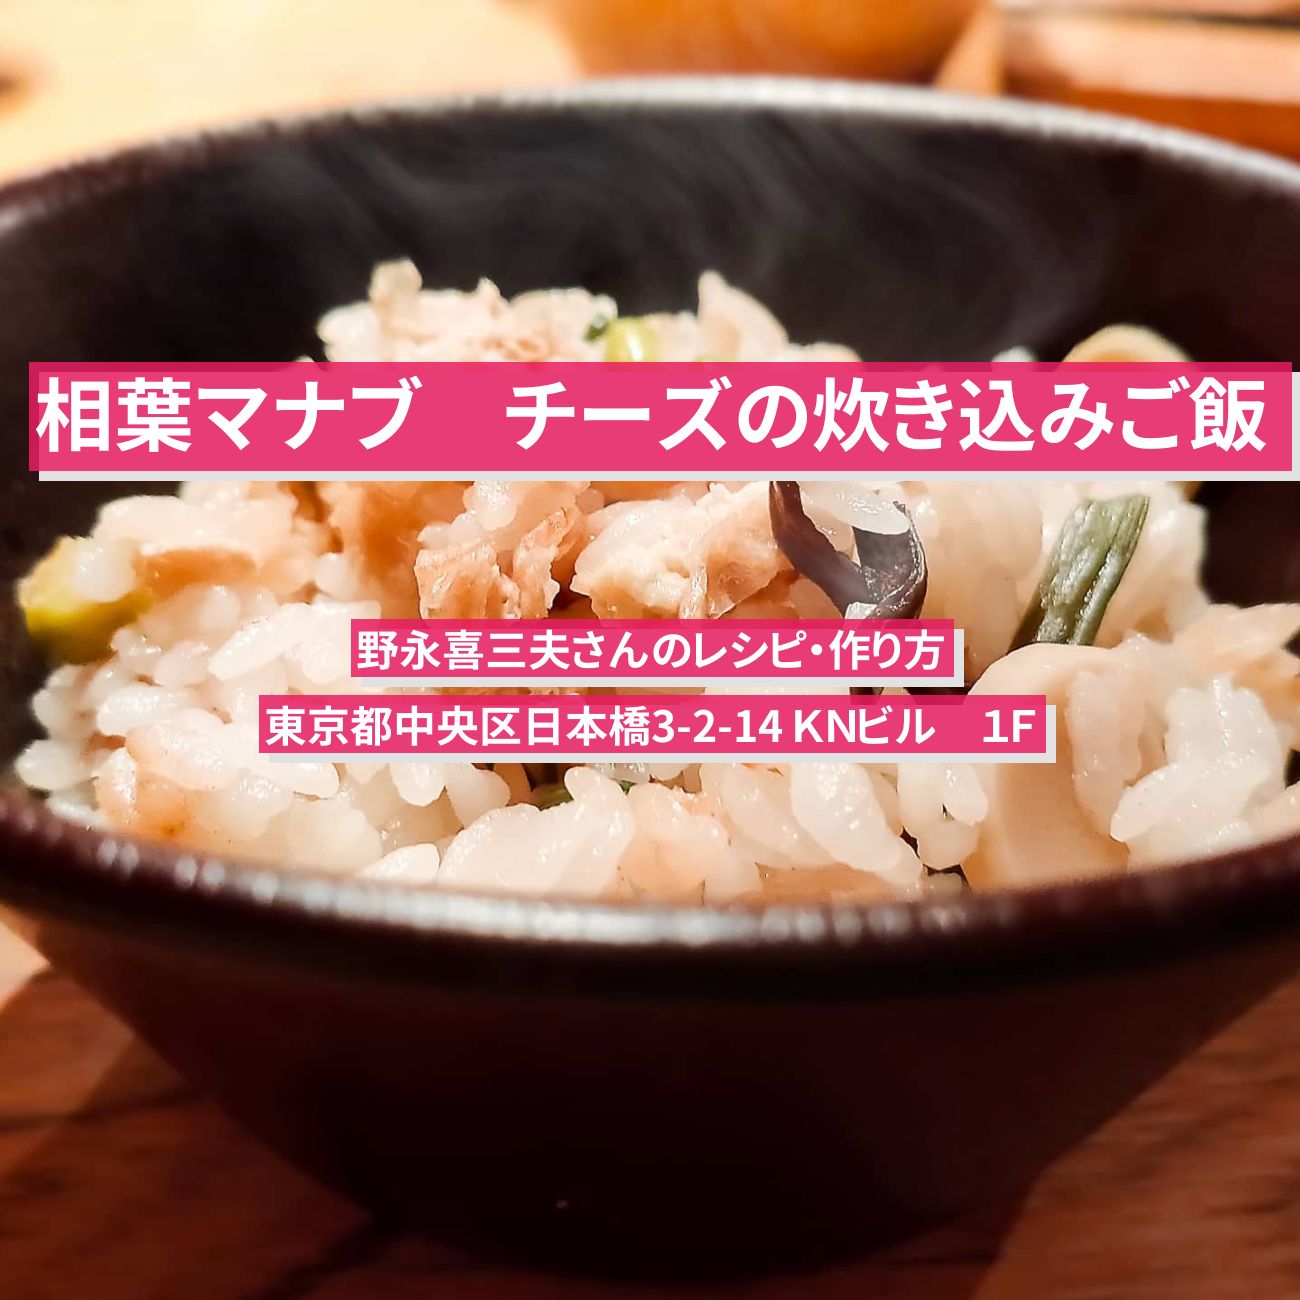 【相葉マナブ】『チーズの炊き込みご飯』野永喜三夫さんのレシピ・作り方